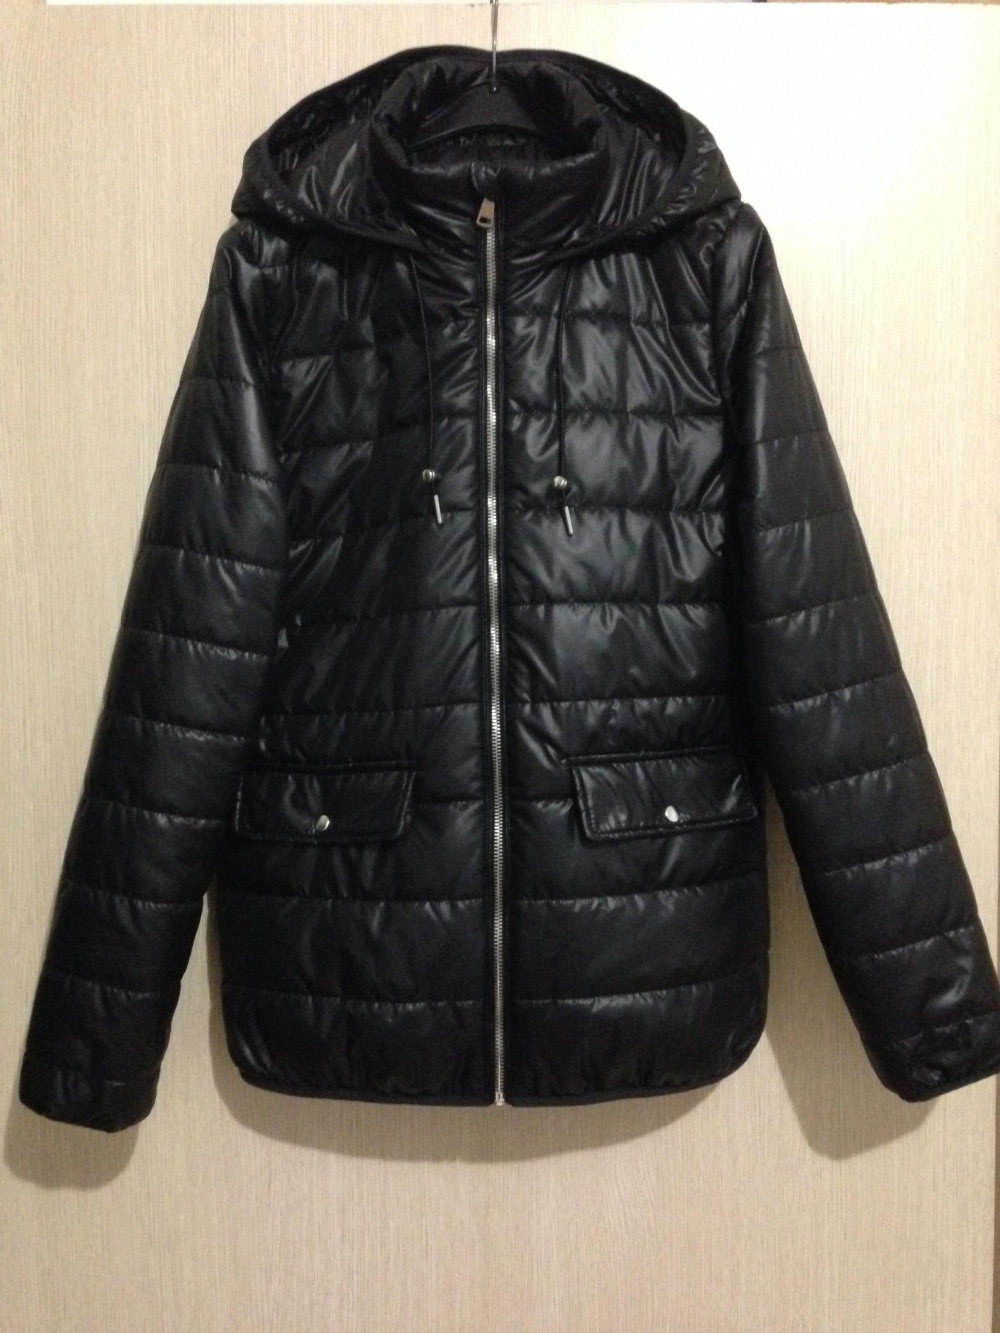 Утеплённая курточка " Marks Spencer ", размер М